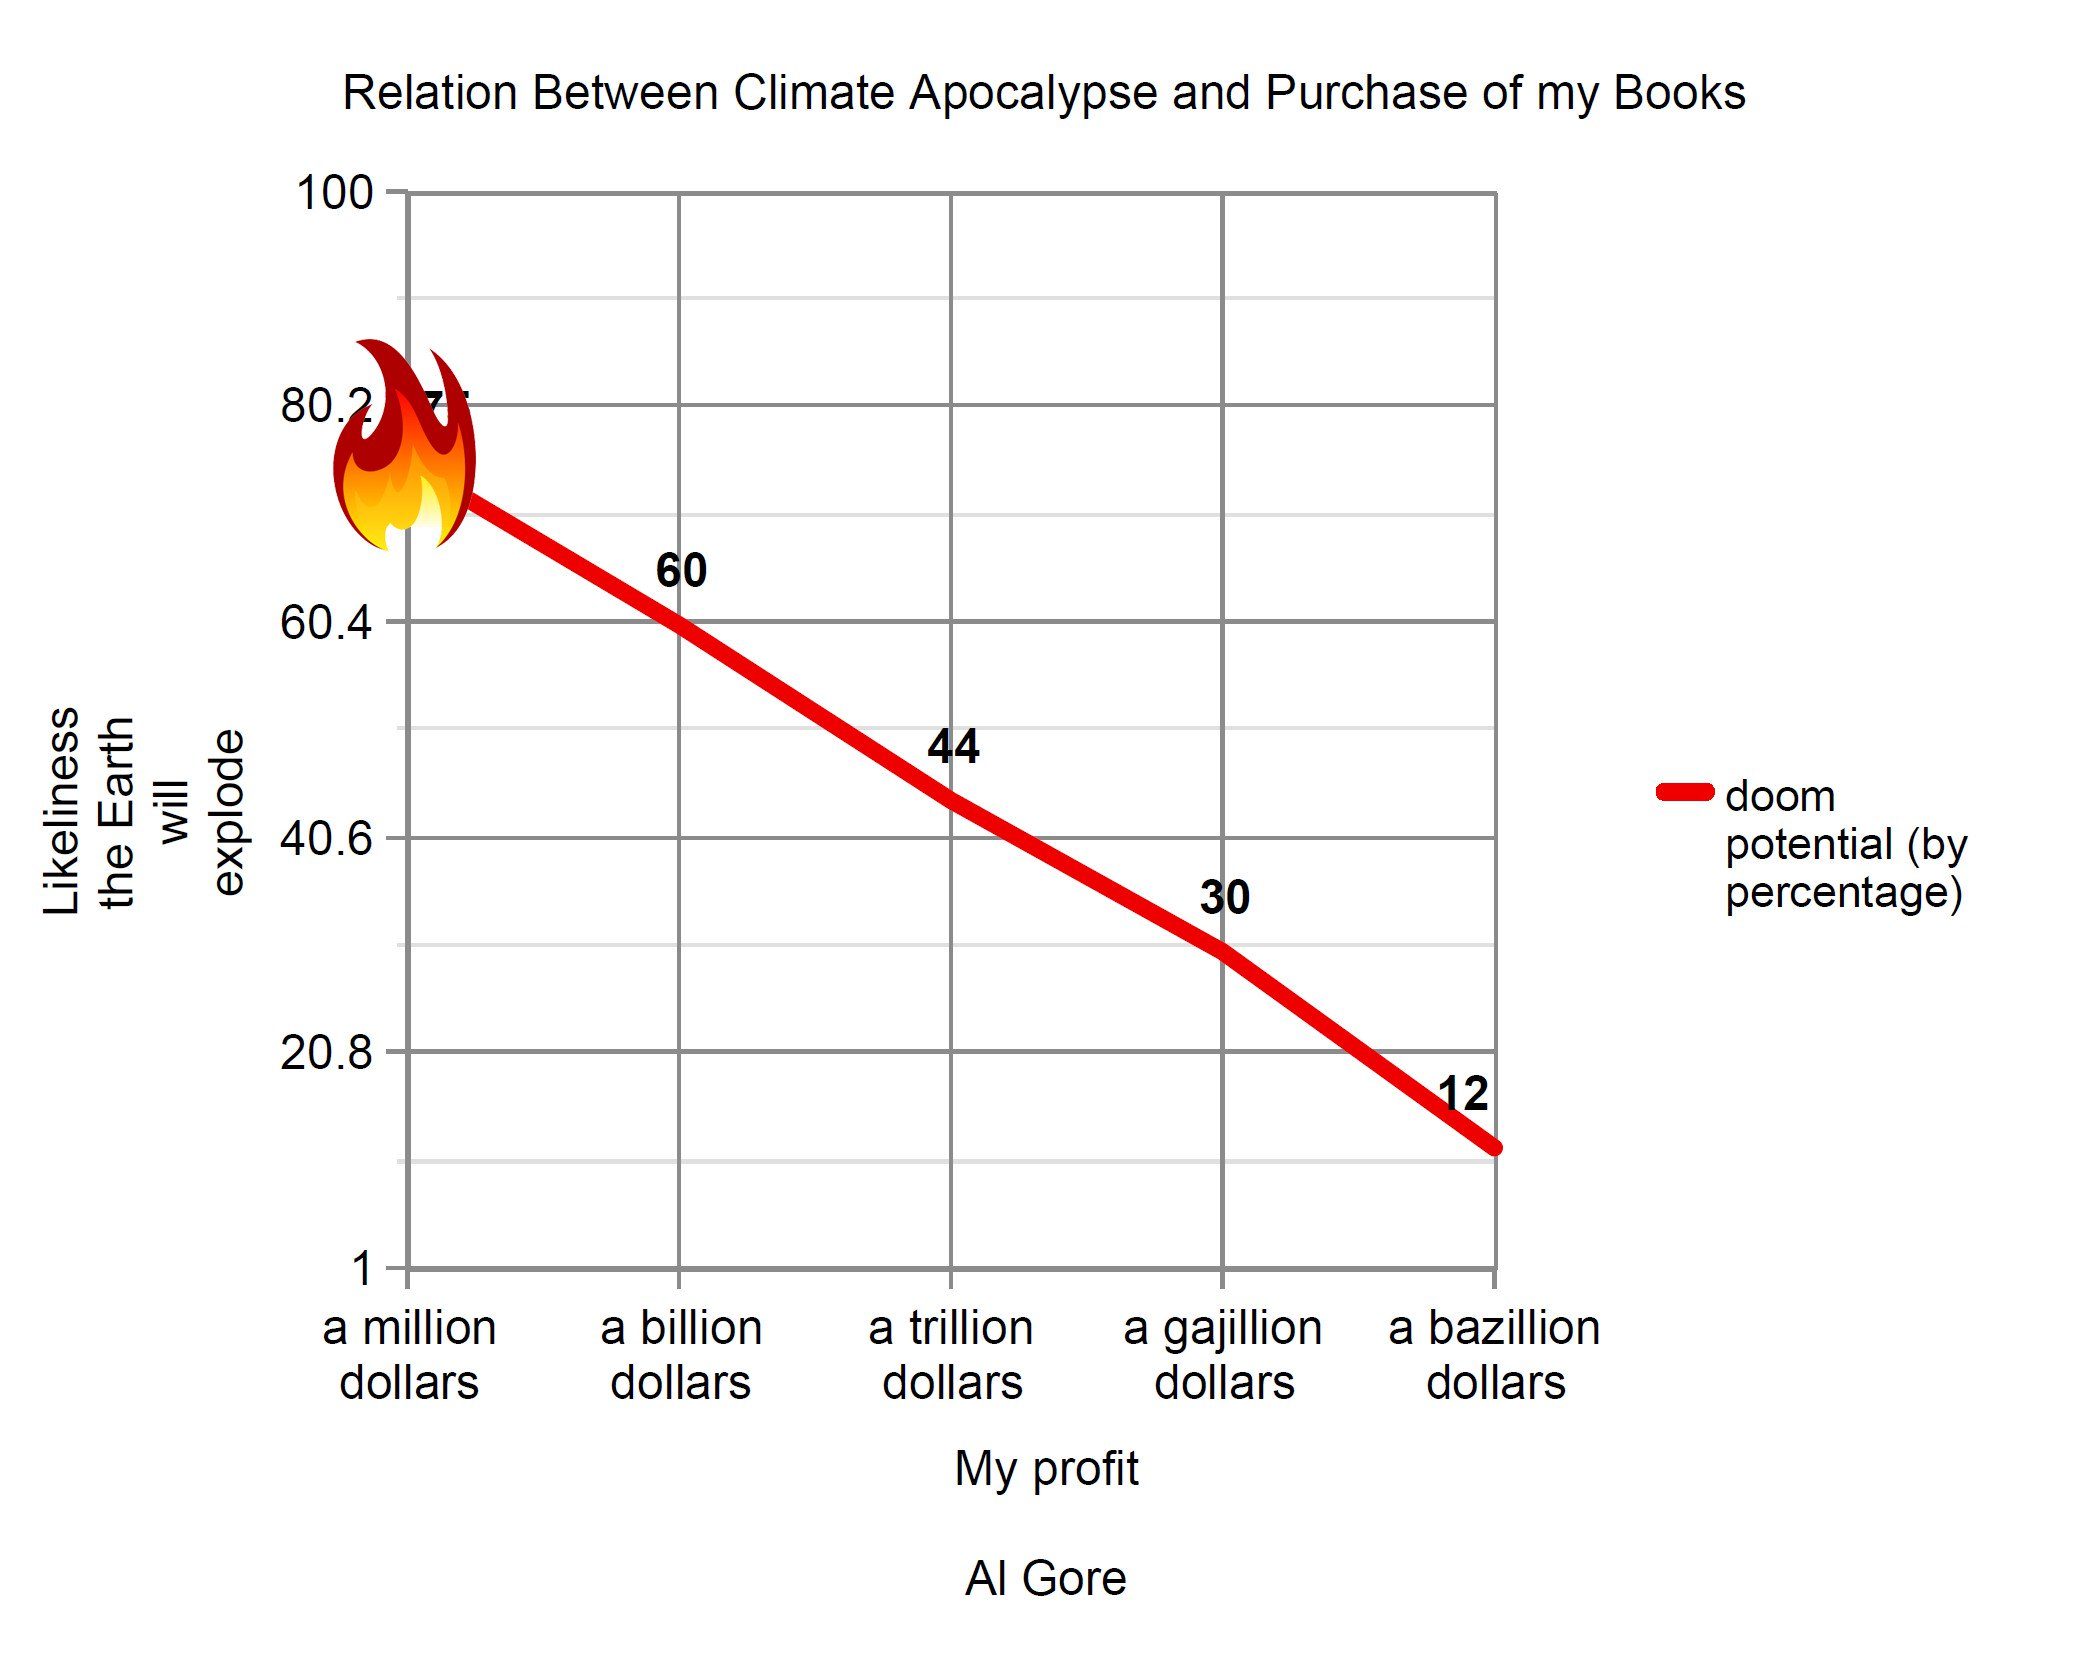 Al Gore's Book